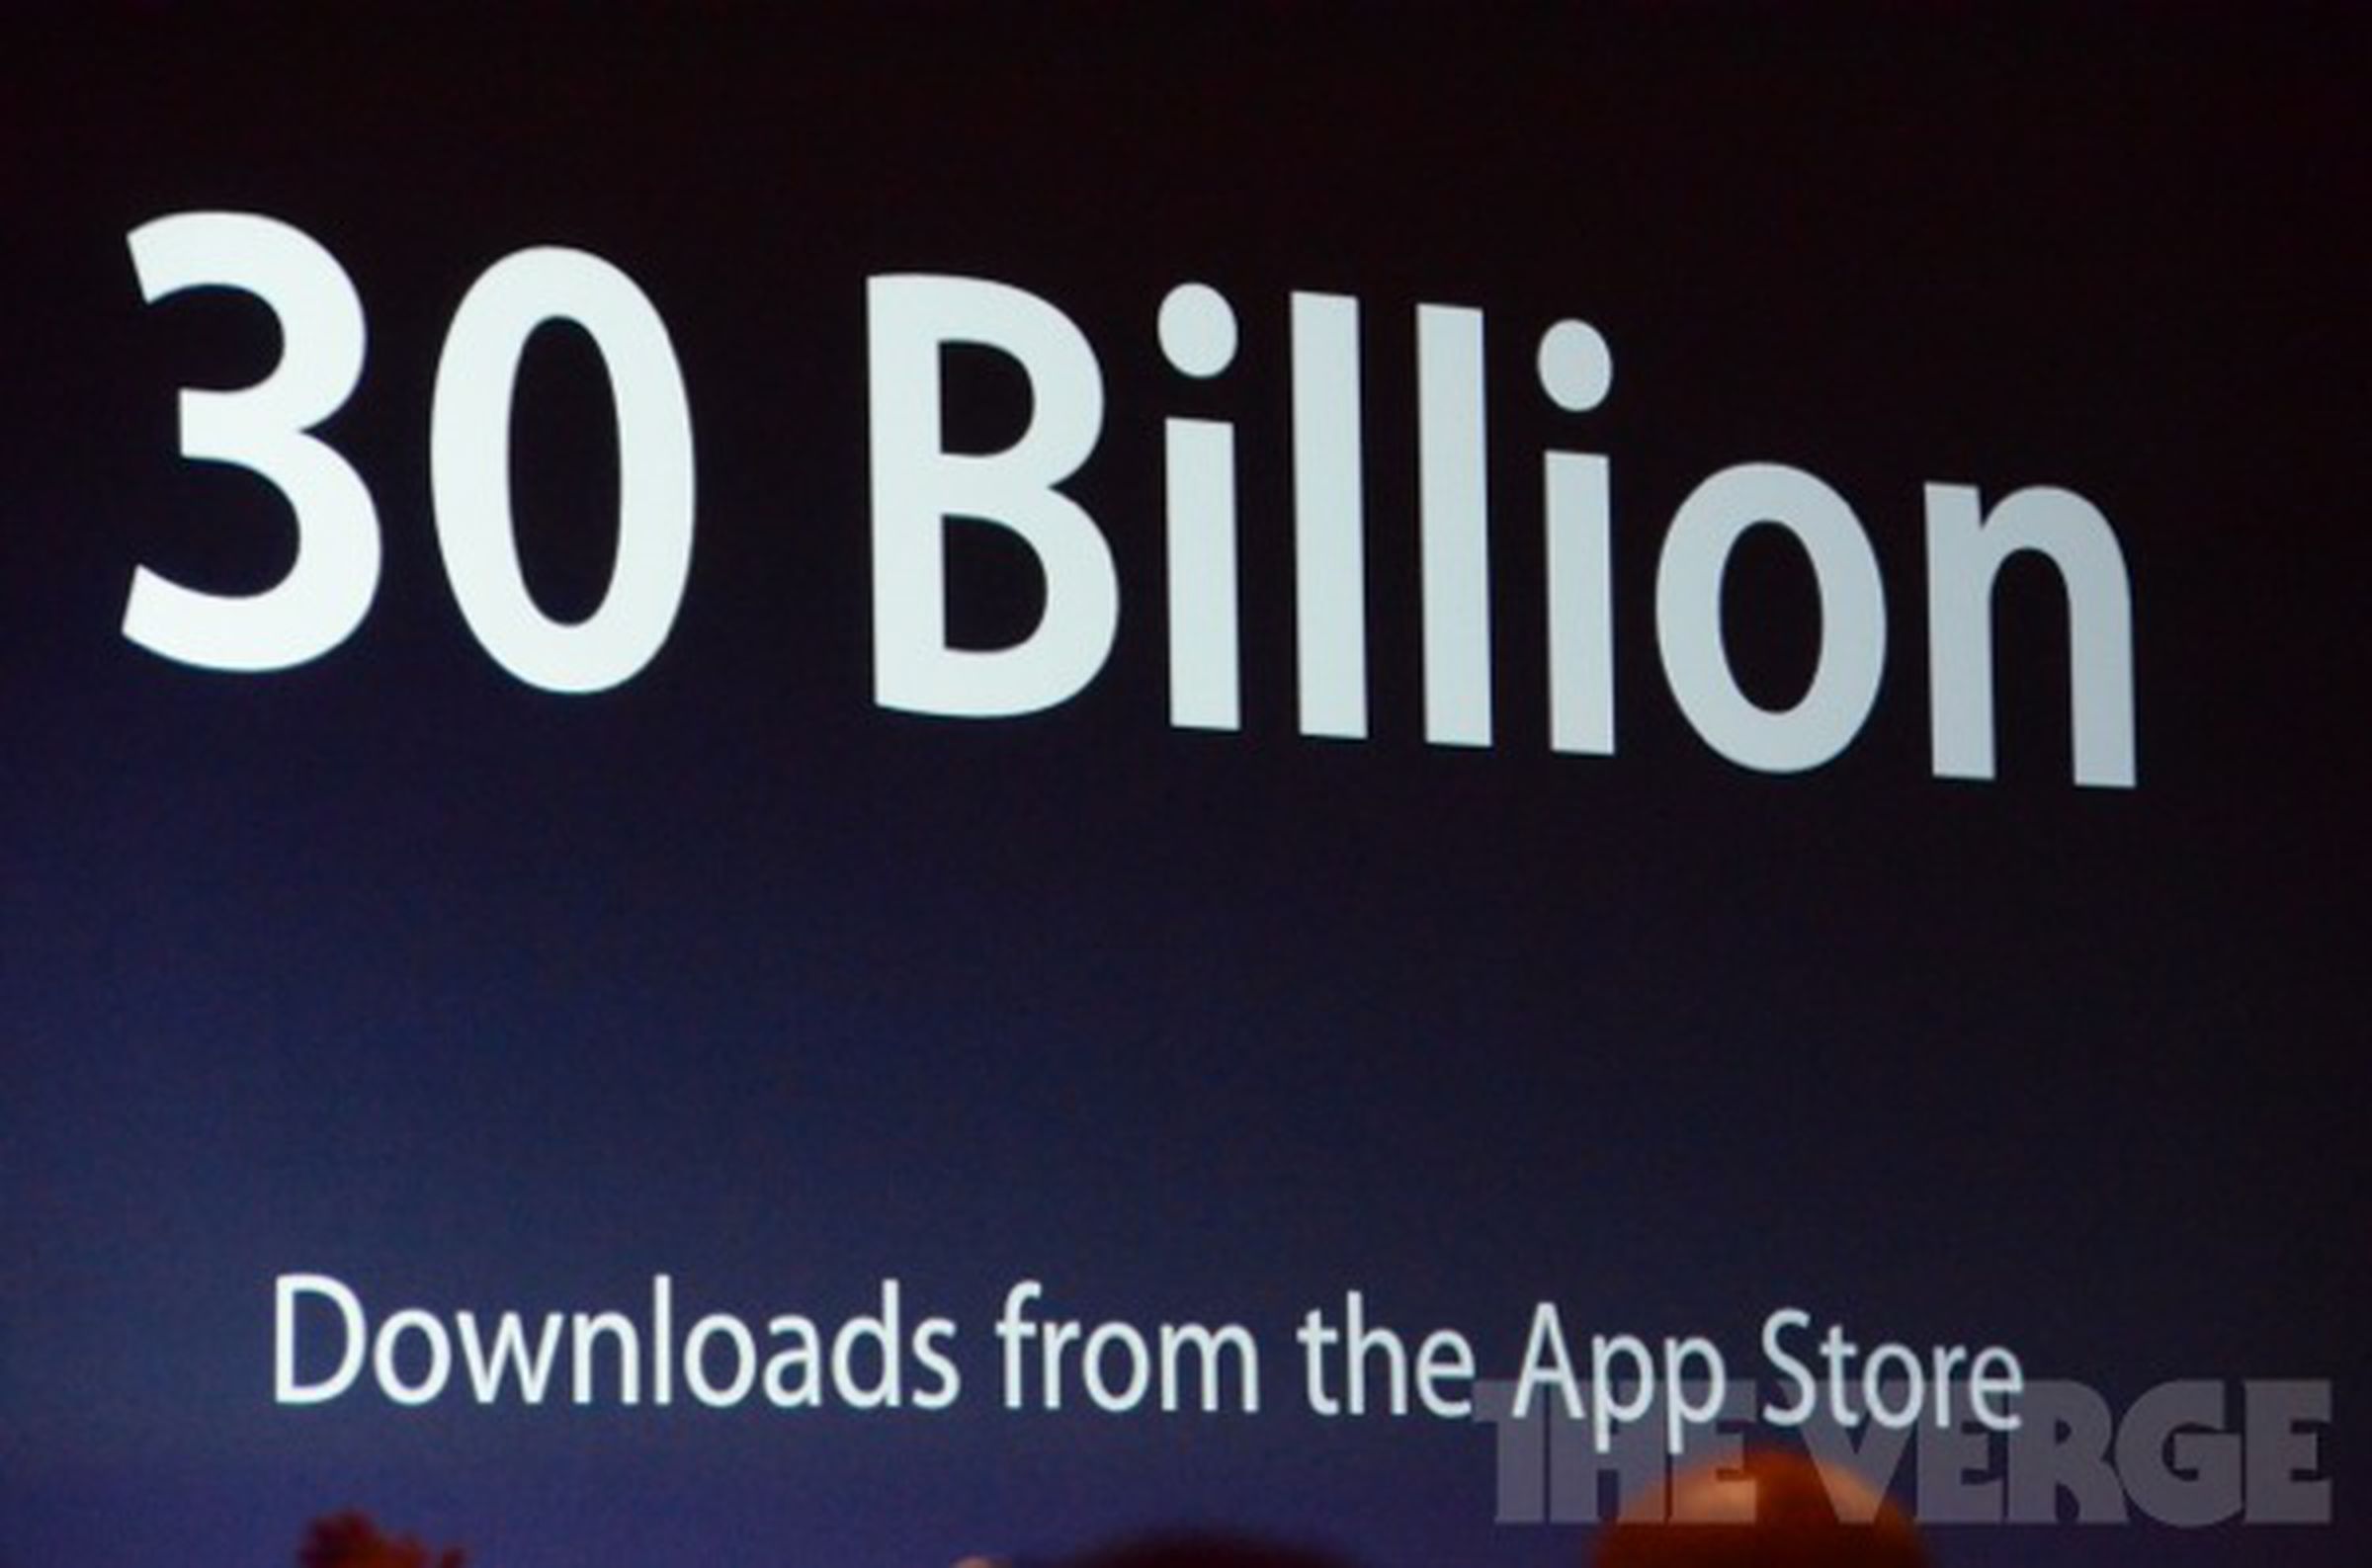 App Store statistics images